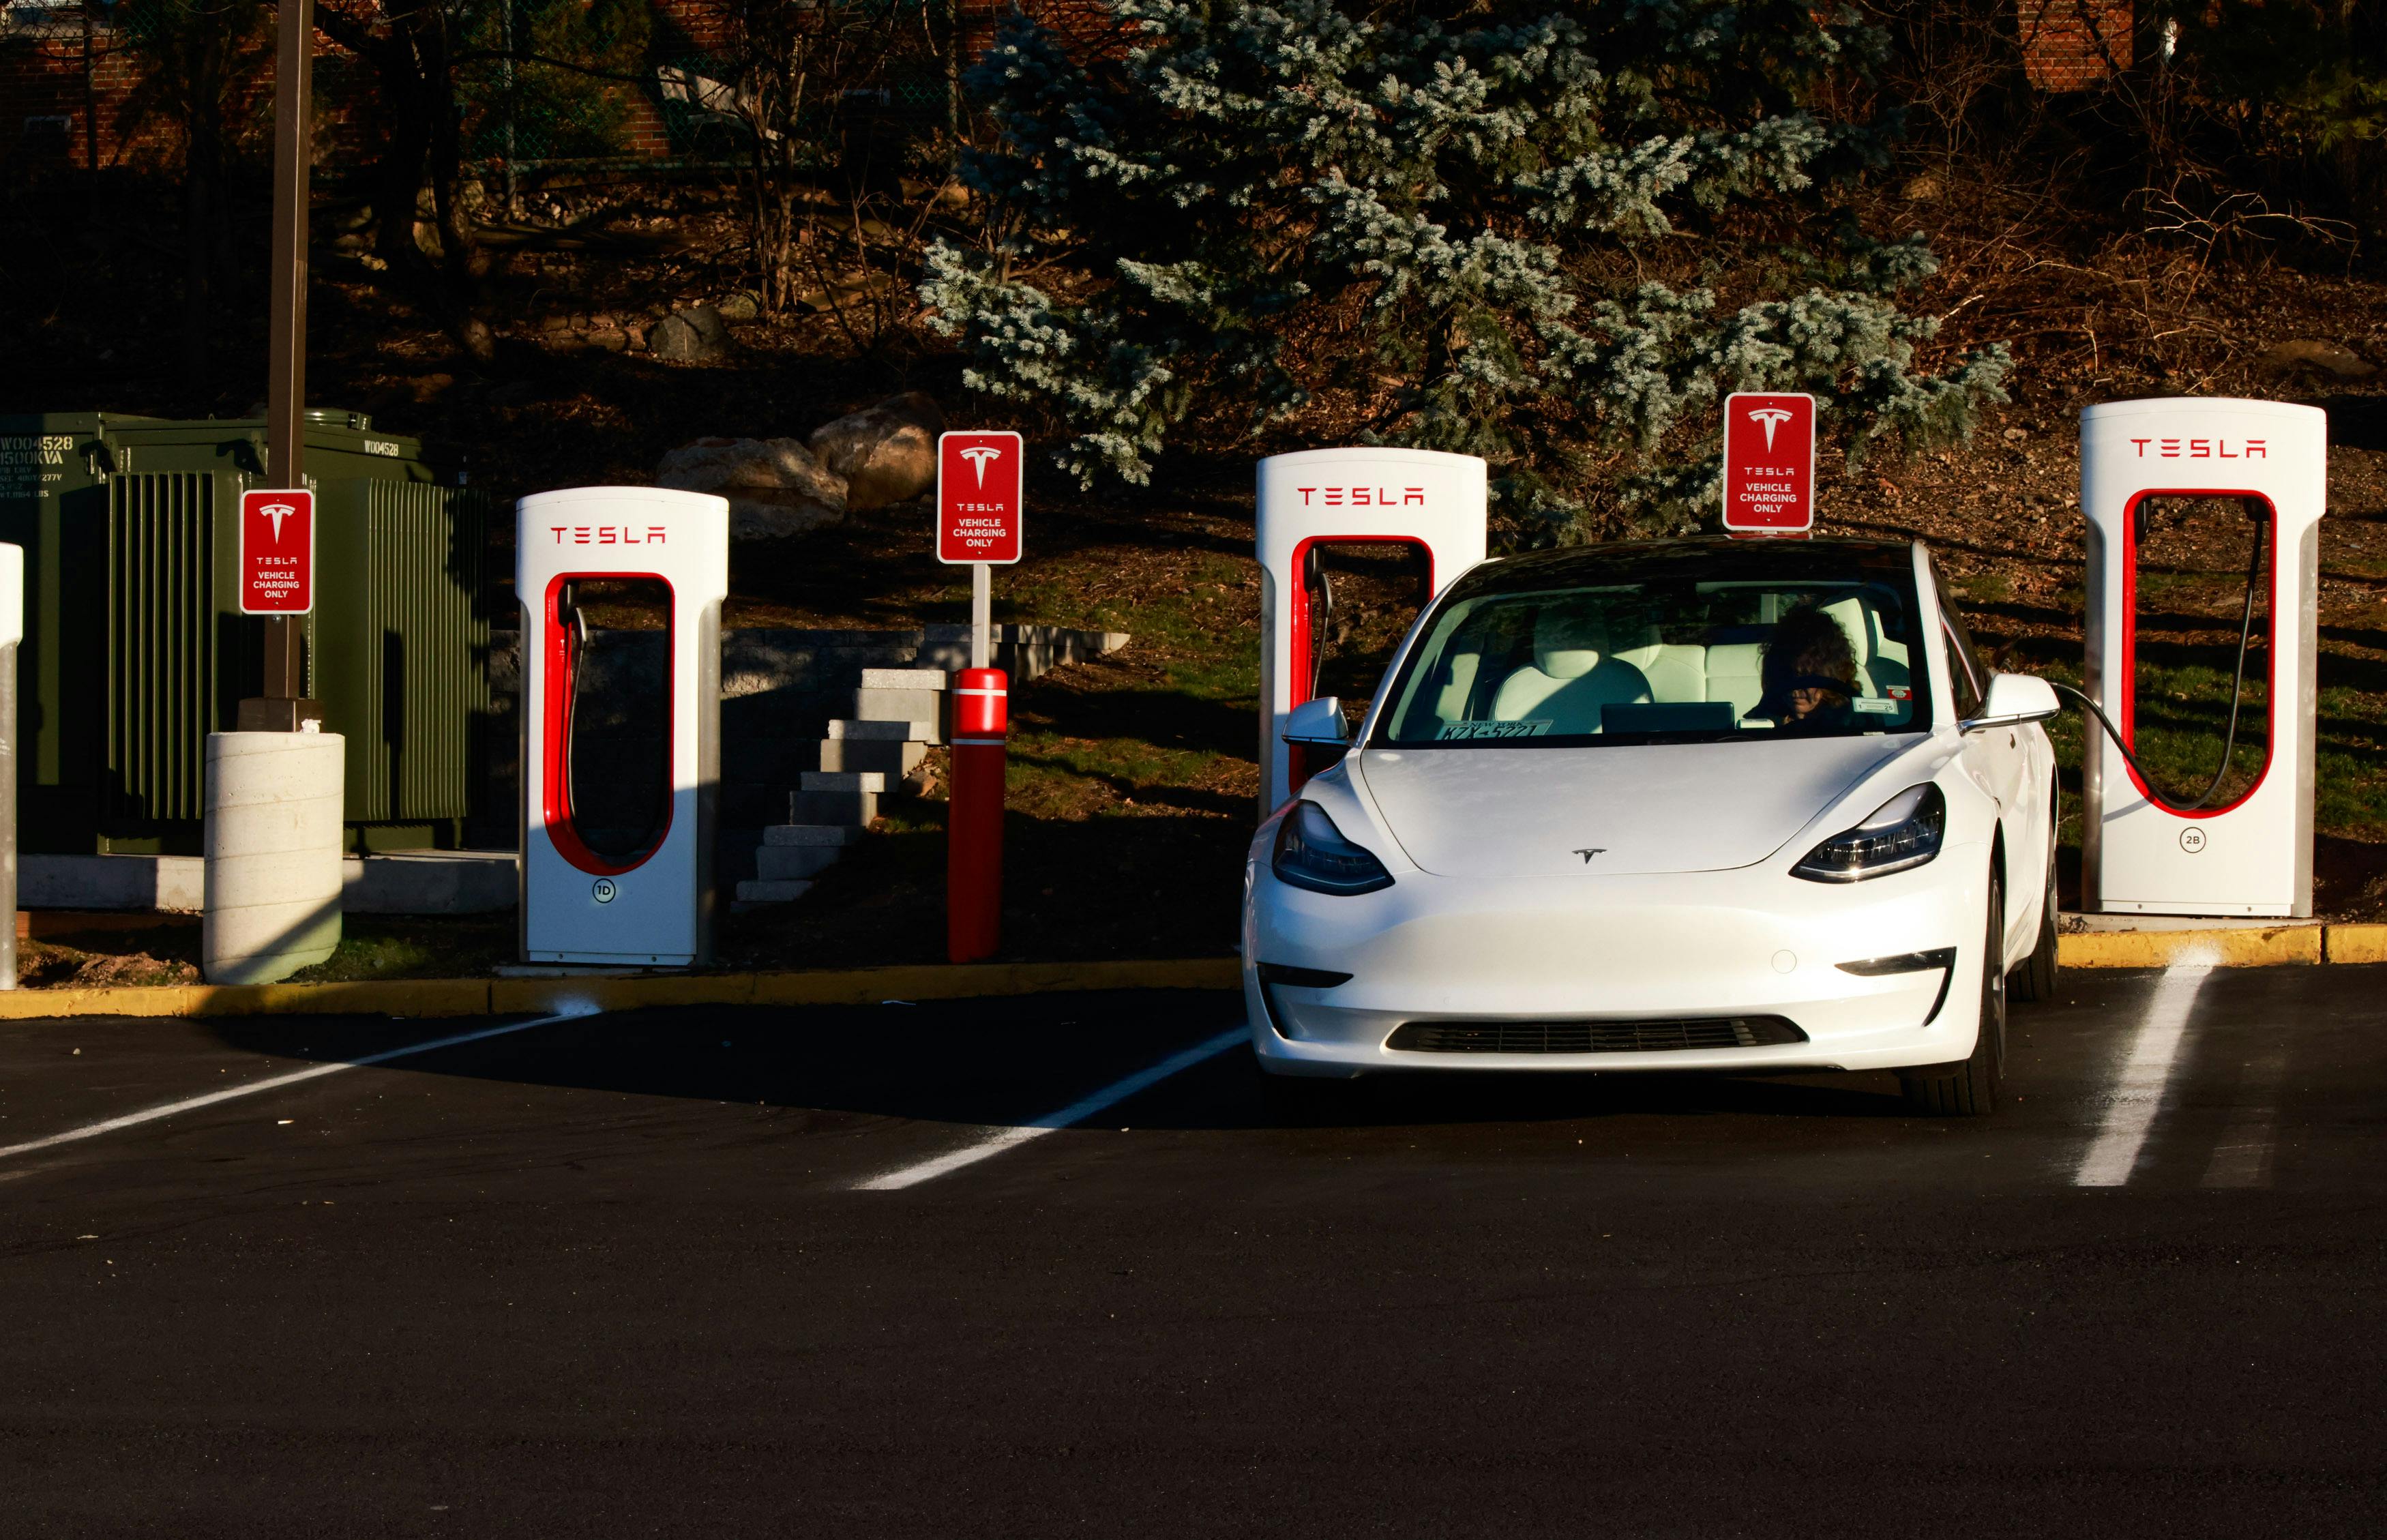 Tesla's home charging station receives highest customer